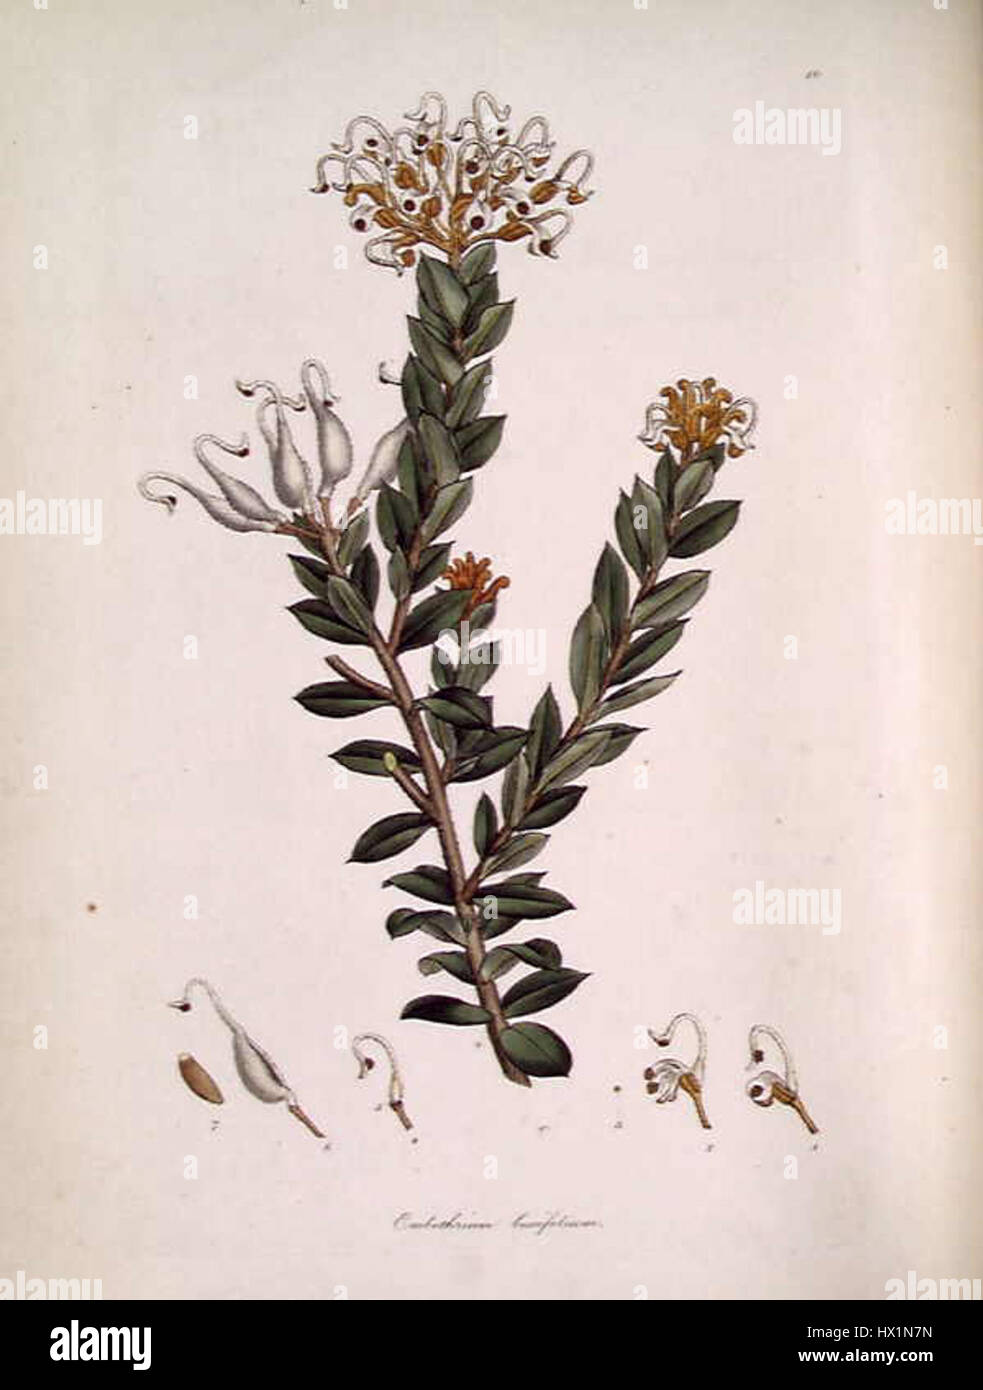 Embothrium (Grevillea) buxifolium Stock Photo